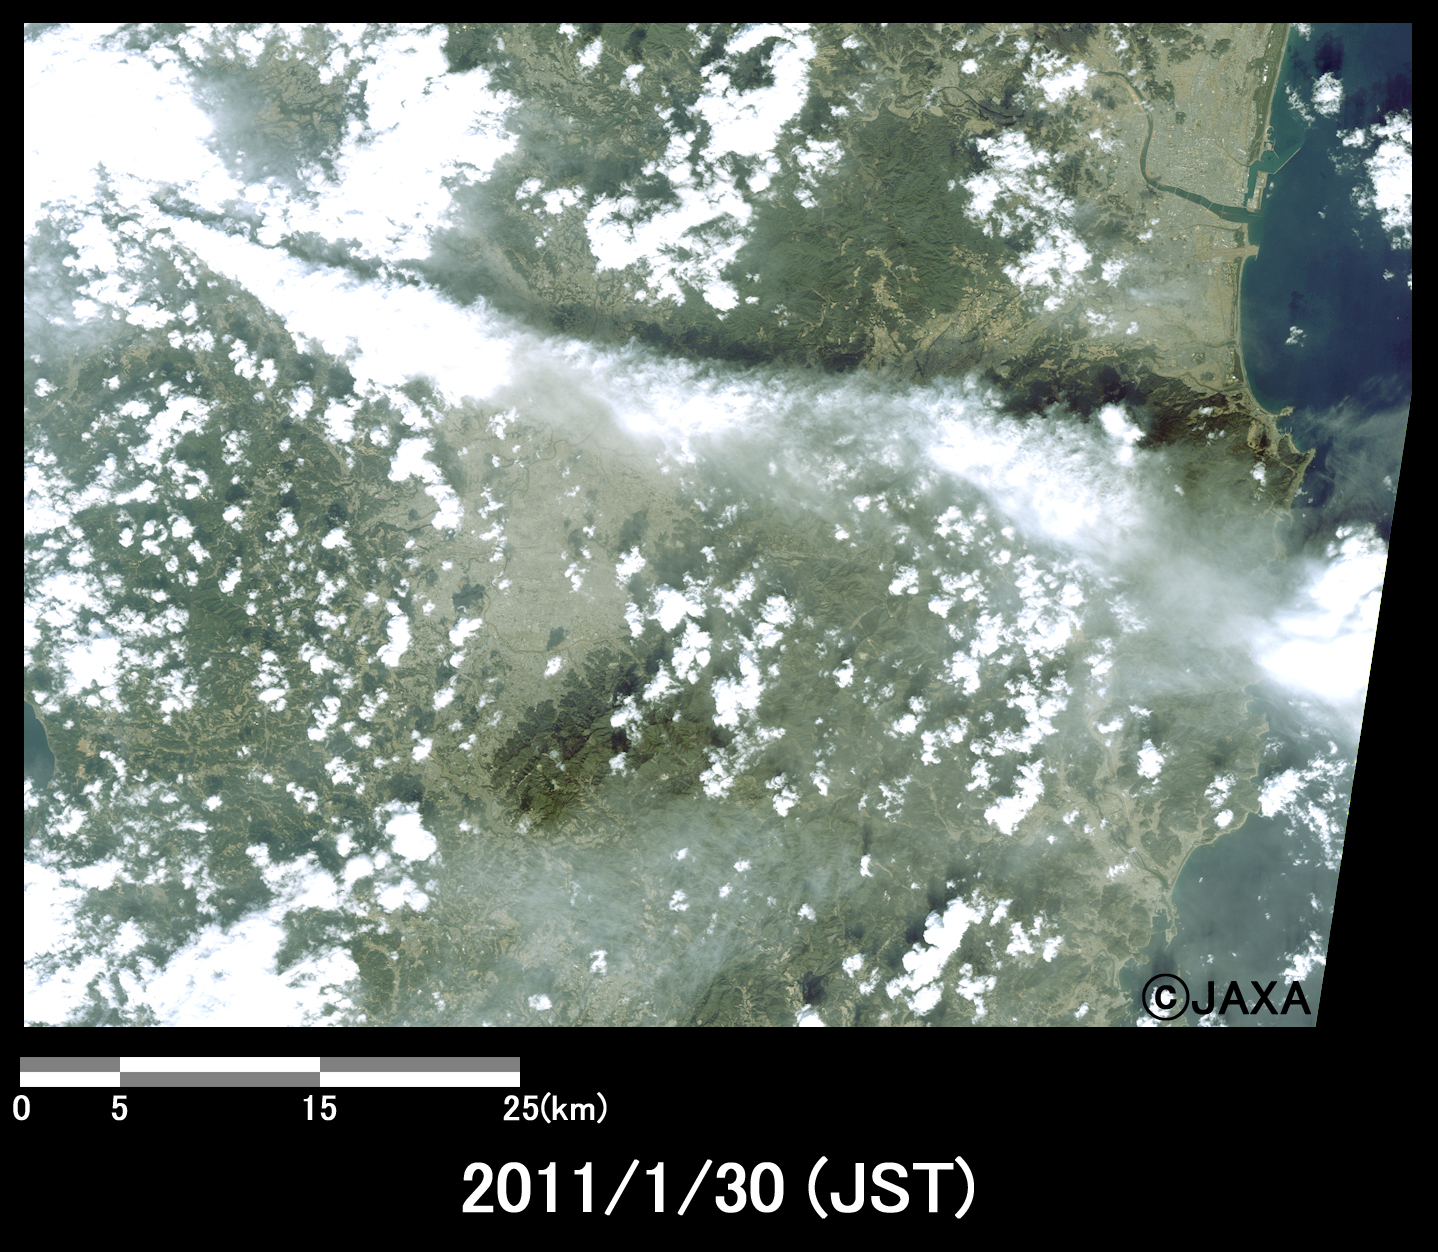 図2-2: 新燃岳の噴煙の様子(約50km×70kmのエリア)